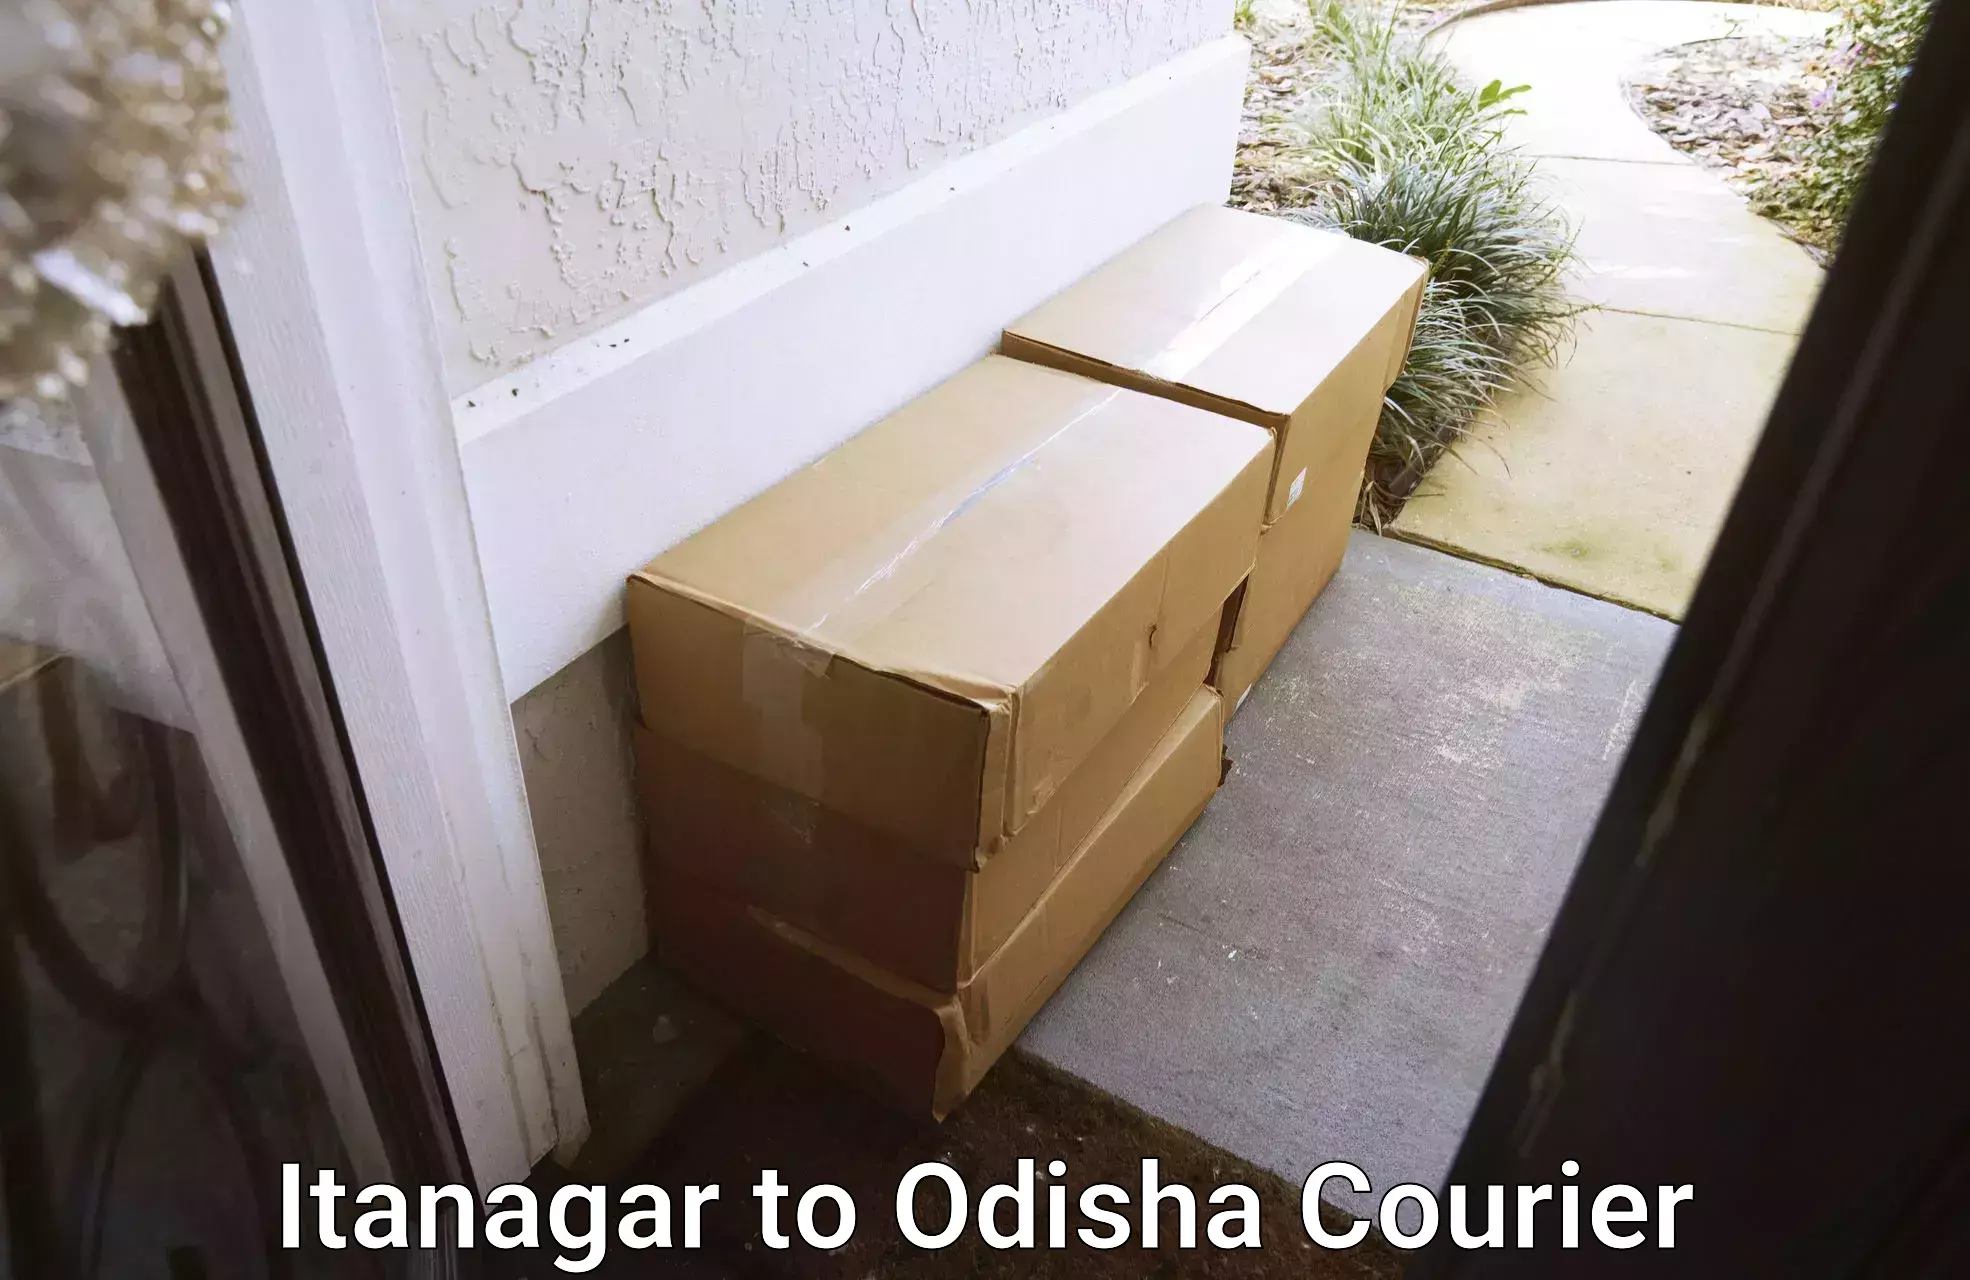 Modern courier technology Itanagar to Semiliguda